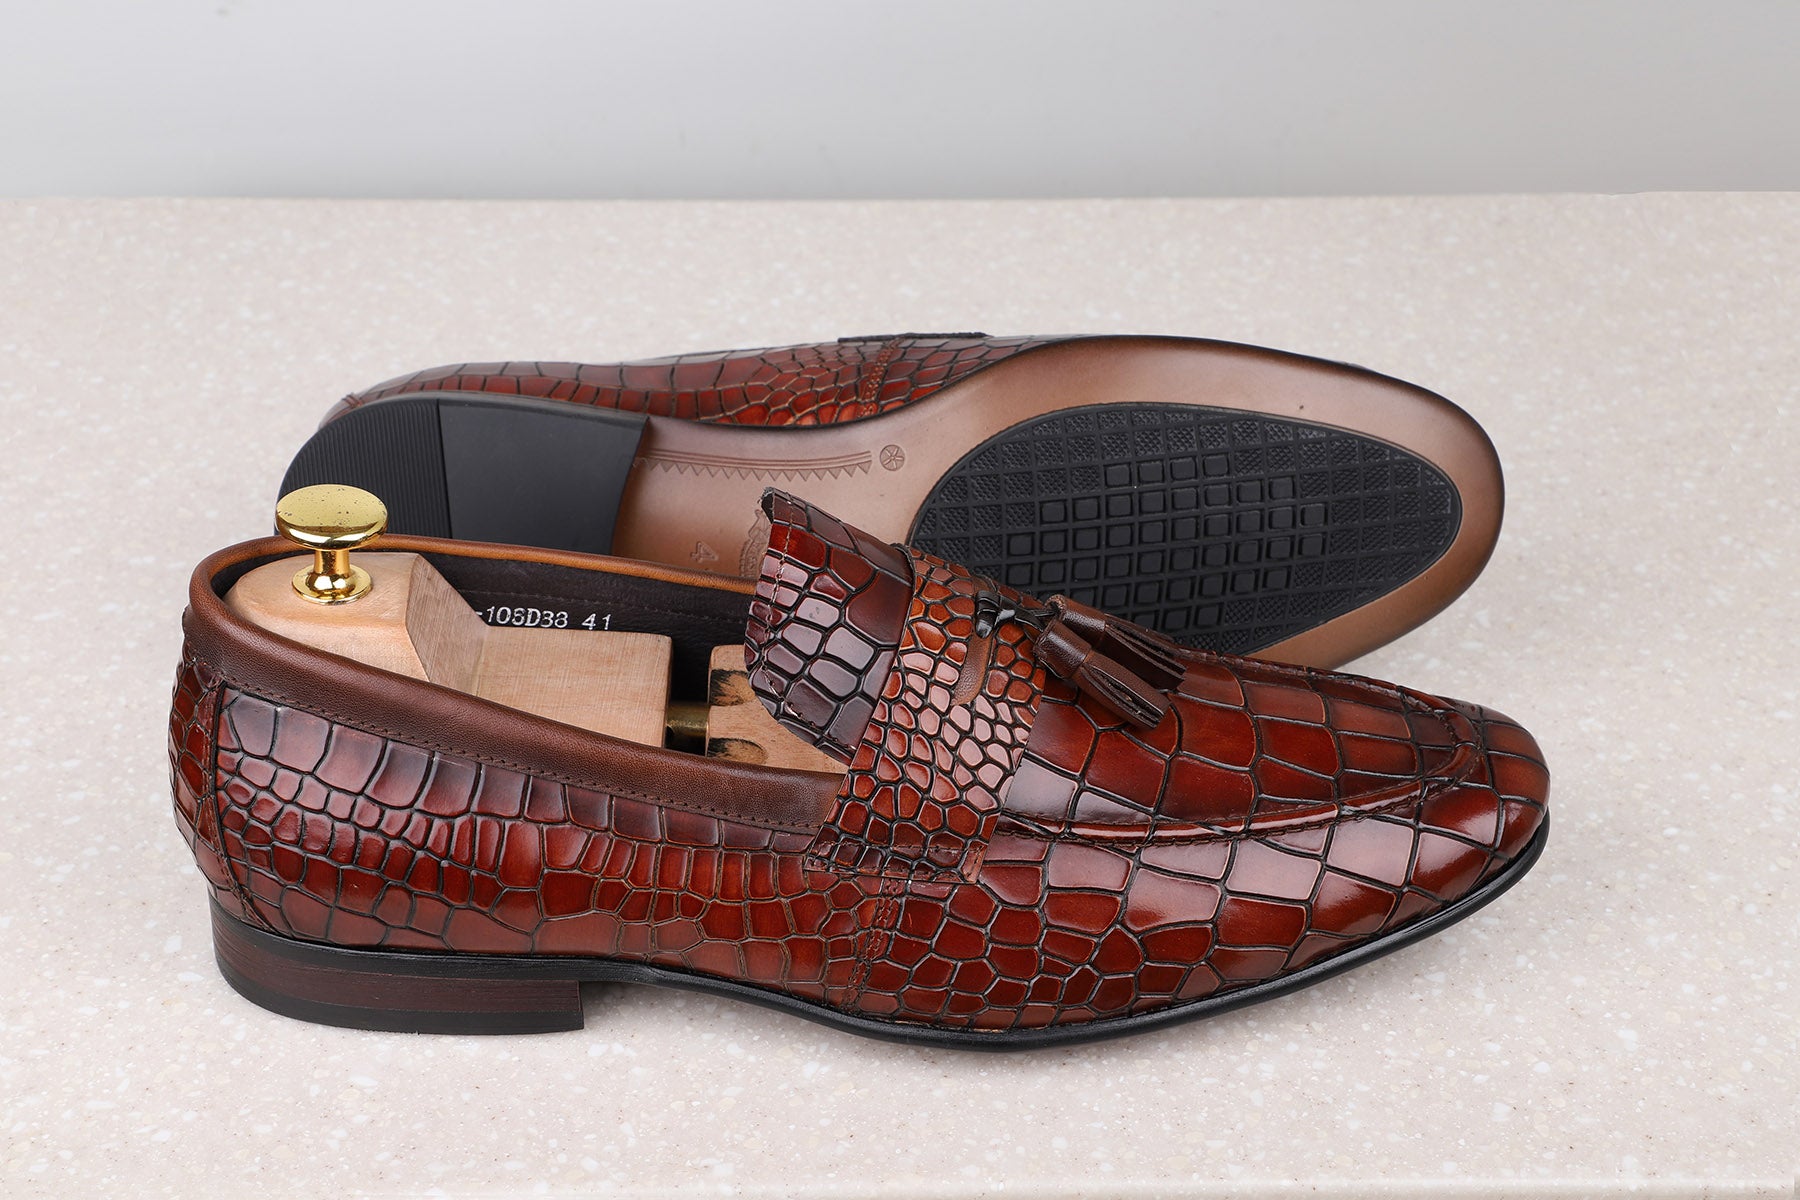 FORMAL SLIPPONS-TAN-Men's Formal Slipons-Inc5 Shoes